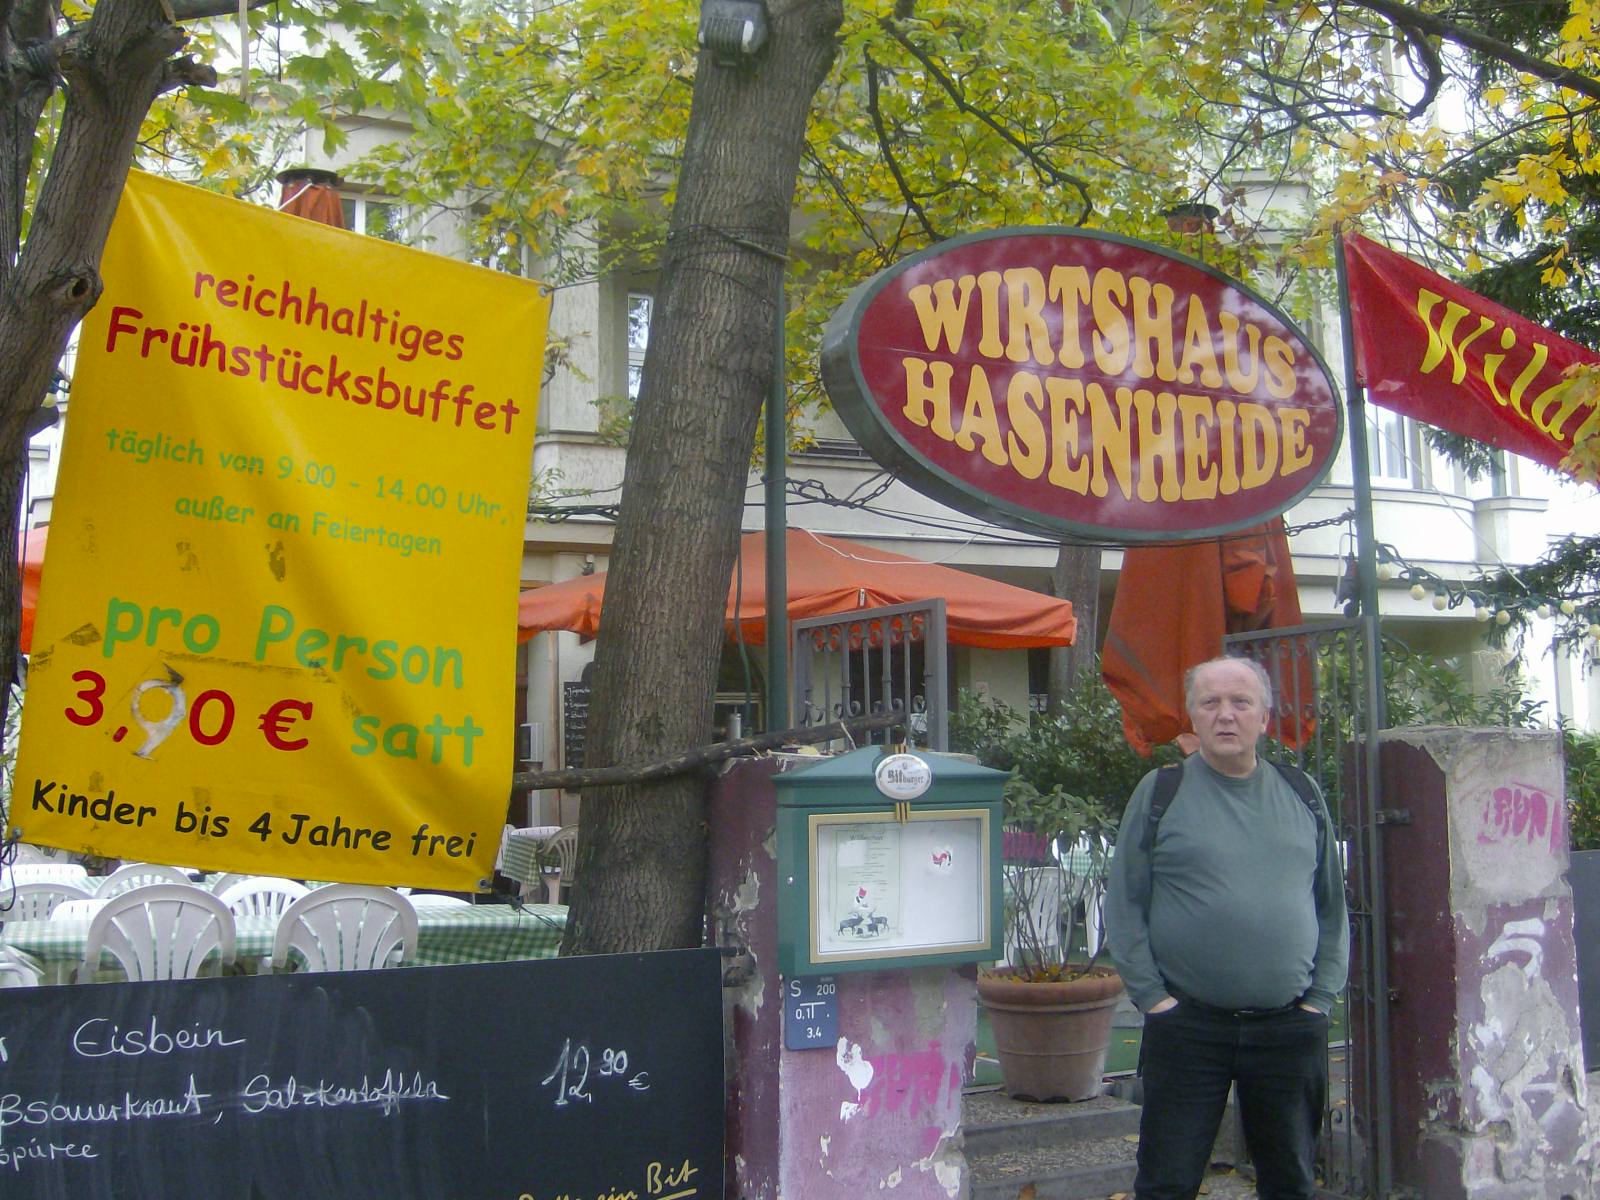 Farbfoto: Erwin Thomasius vor dem Wirtshaus Hasenheide in der Hasenheide 18 in Neukölln in Berlin im Oktober des Jahres 2011. Fotograf: R.I.